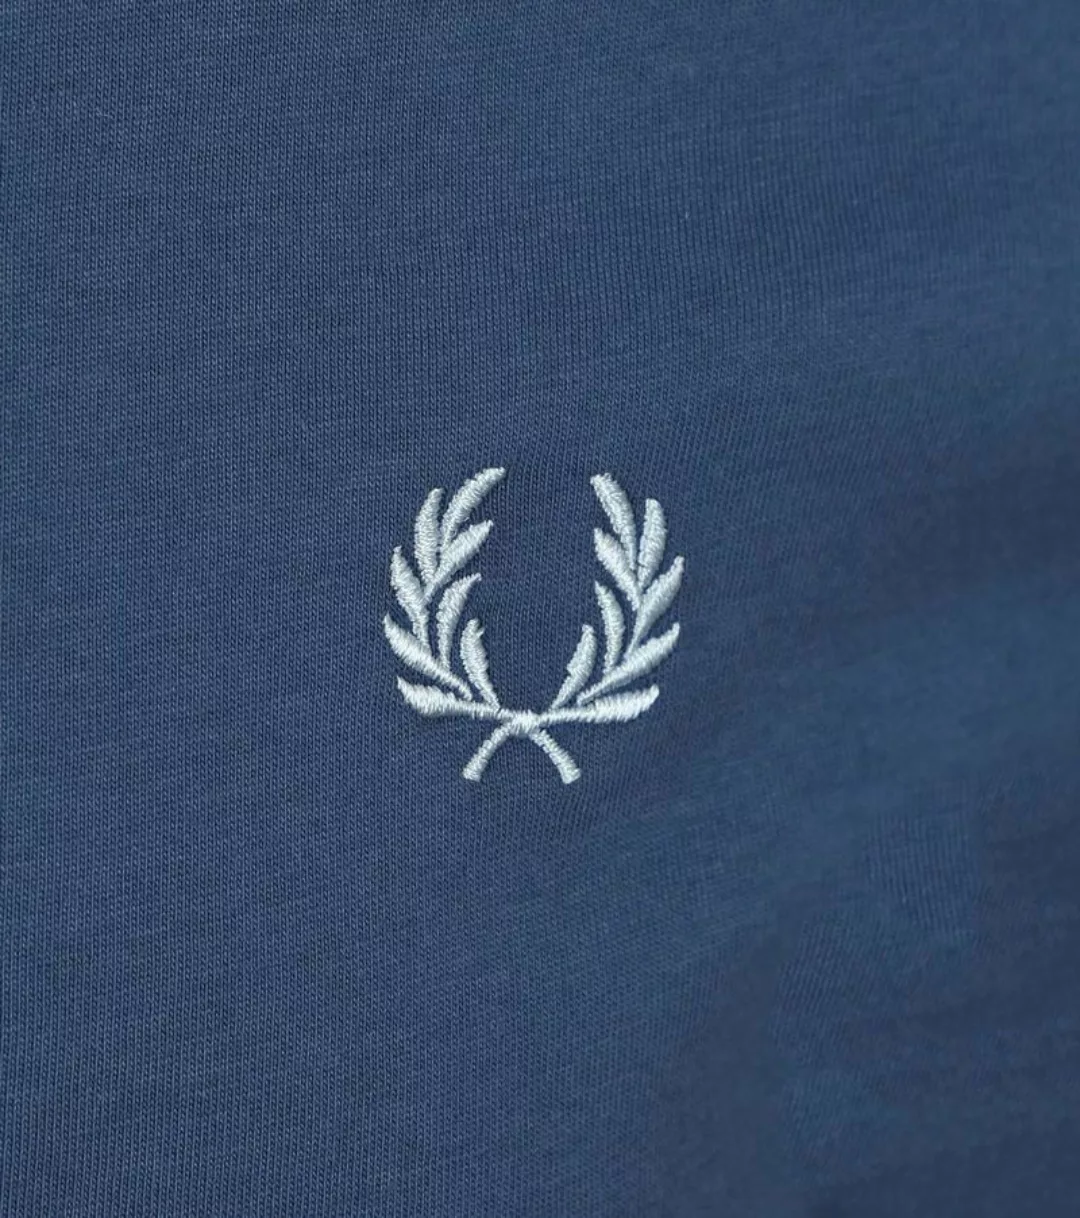 Fred Perry T-Shirt Ringer M3519 Blau V06 - Größe XL günstig online kaufen